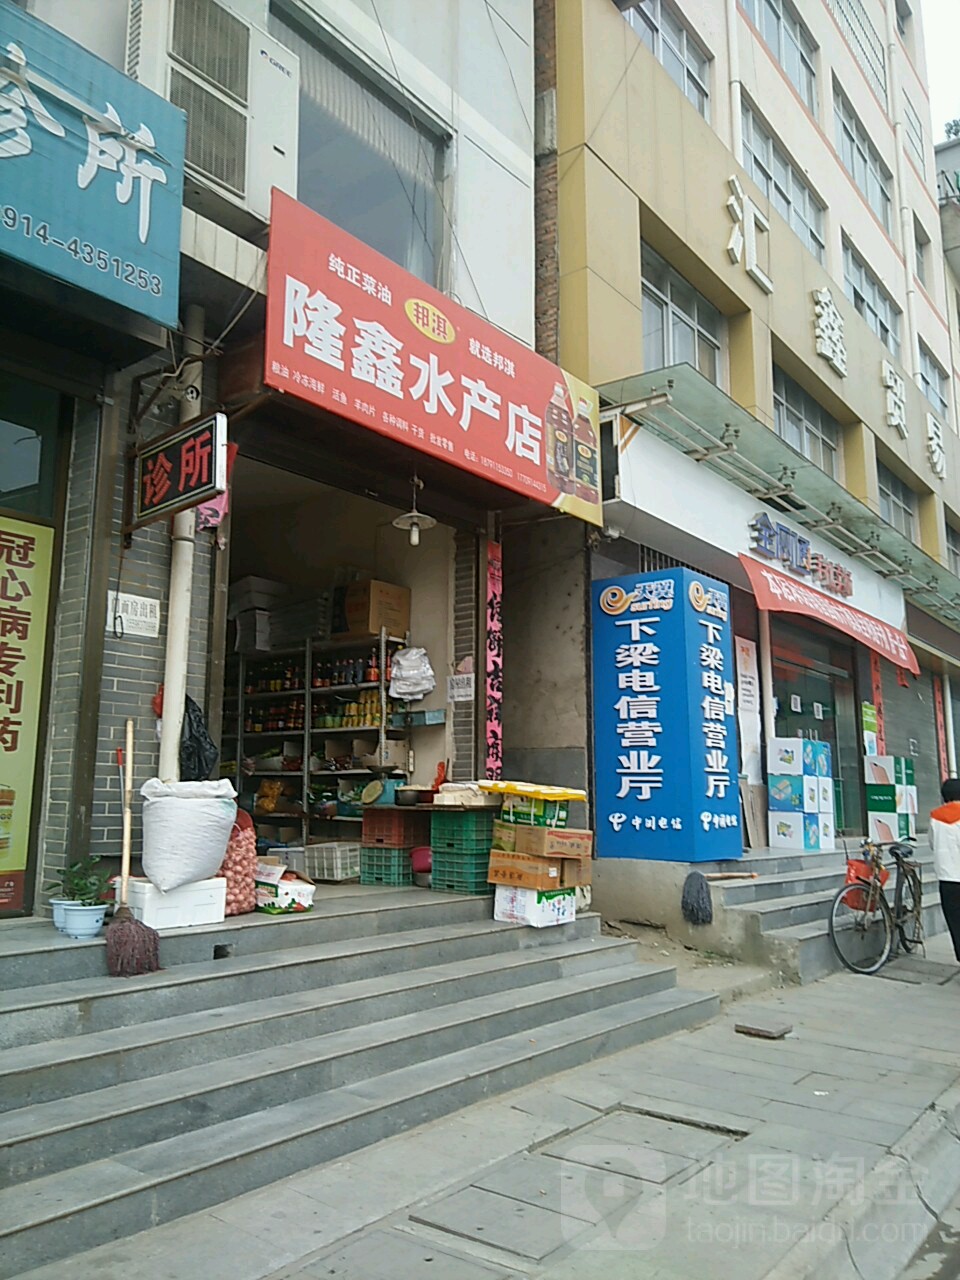 隆鑫水产店